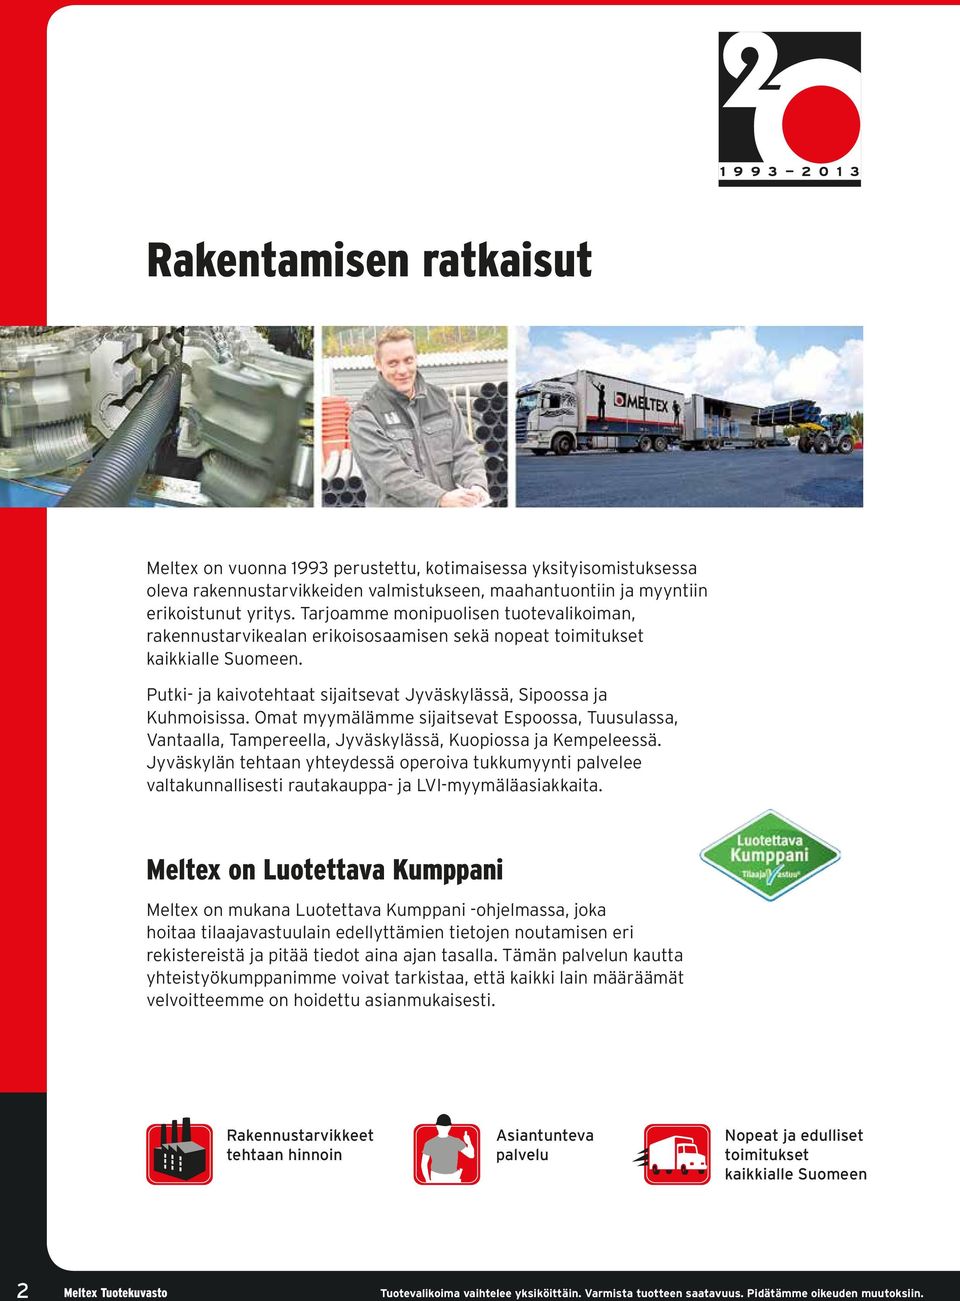 Omat myymälämme sijaitsevat Espoossa, Tuusulassa, Vantaalla, Tampereella, Jyväskylässä, Kuopiossa ja Kempeleessä.